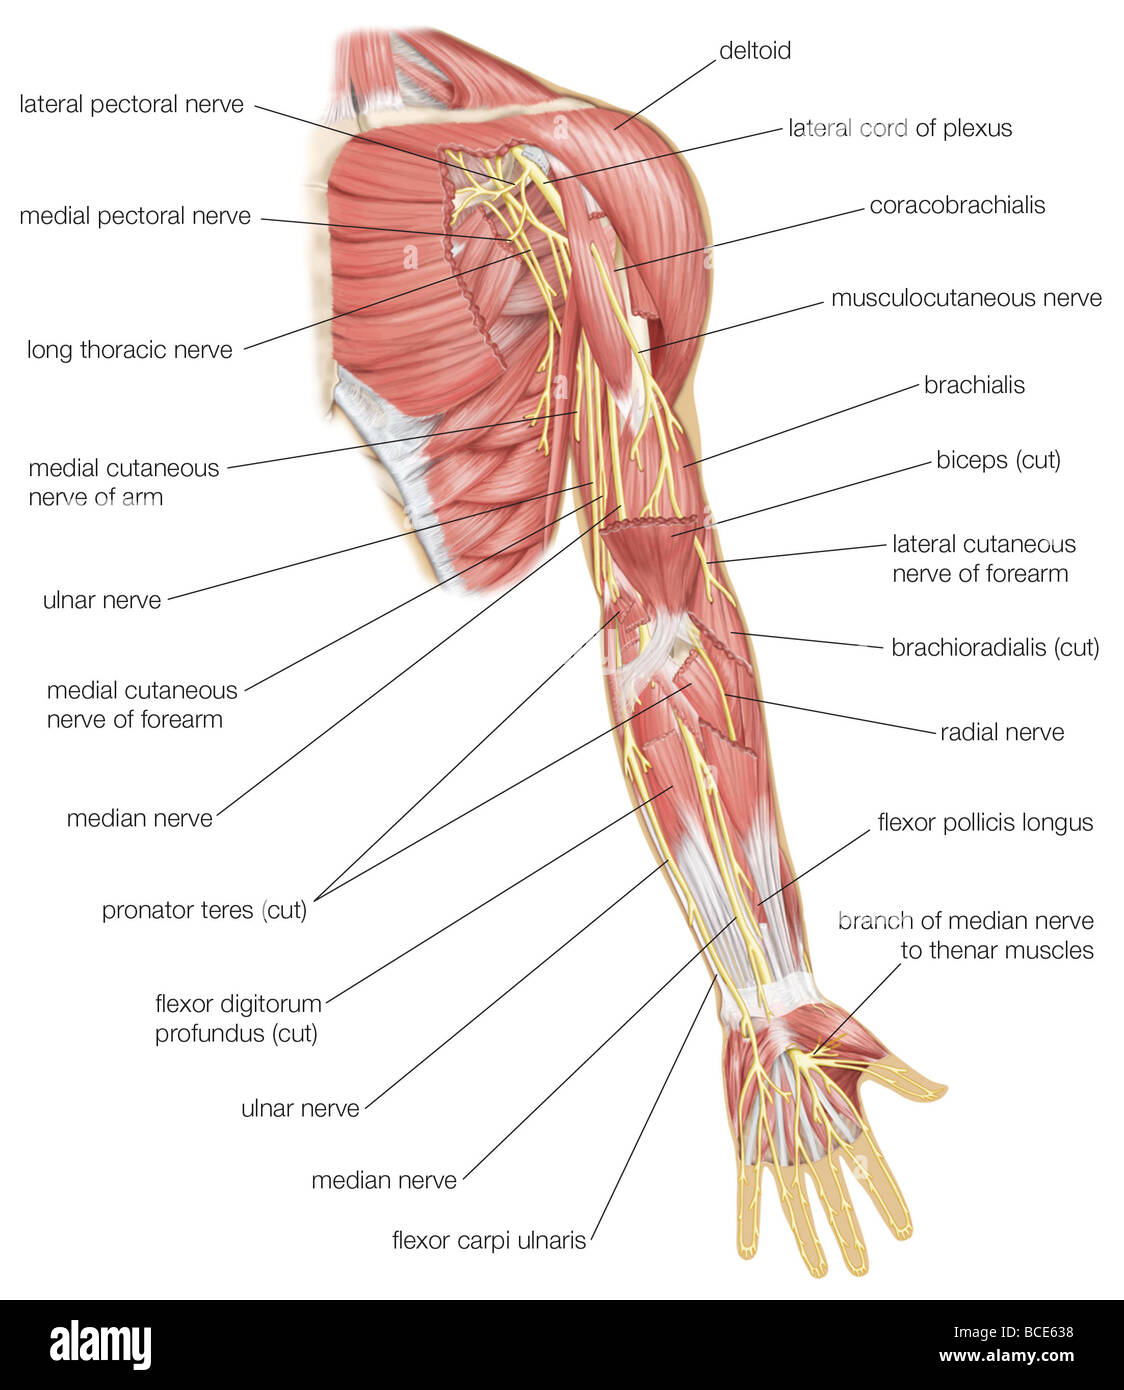 Ansicht von ventral des linken Armes, Median, ulnar und radial Nerven und anderen Zweigen der Plexus brachialis zeigen. Stockfoto